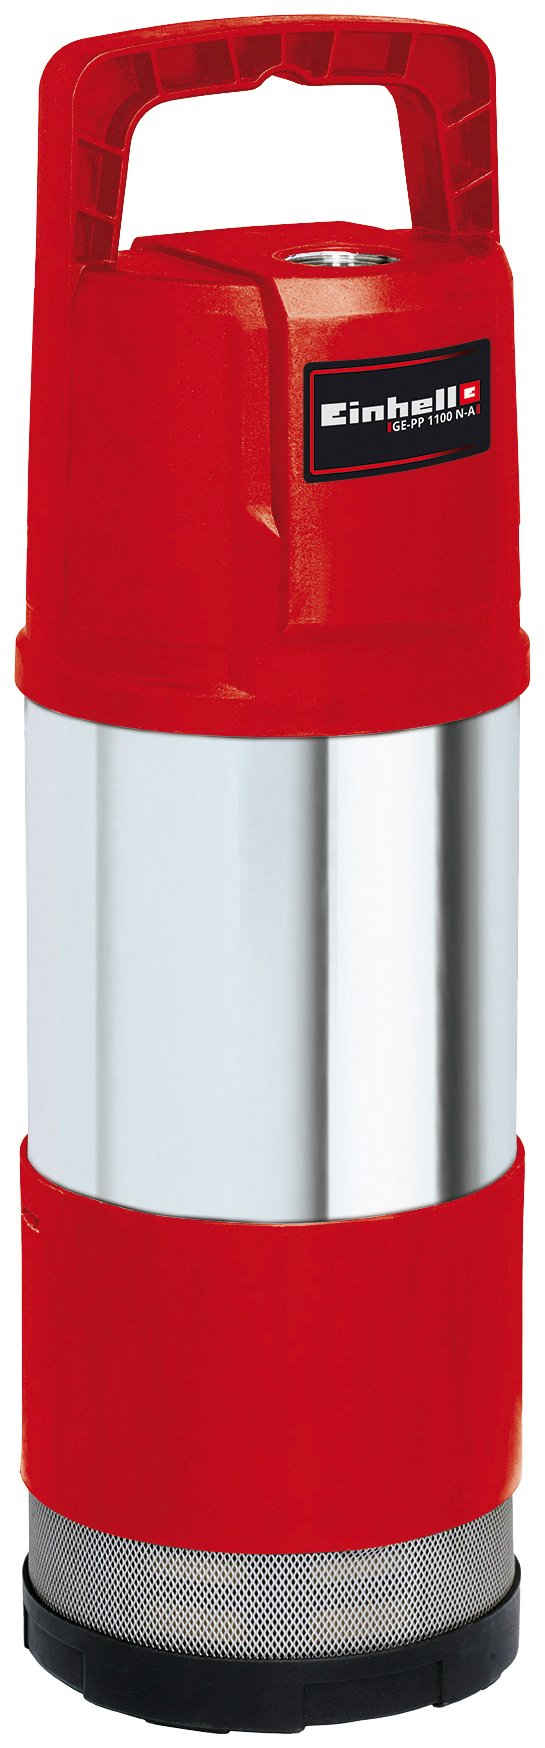 Einhell Tauchdruckpumpe GE-PP 1100 N-A, 6.000 l/h max. Fördermenge